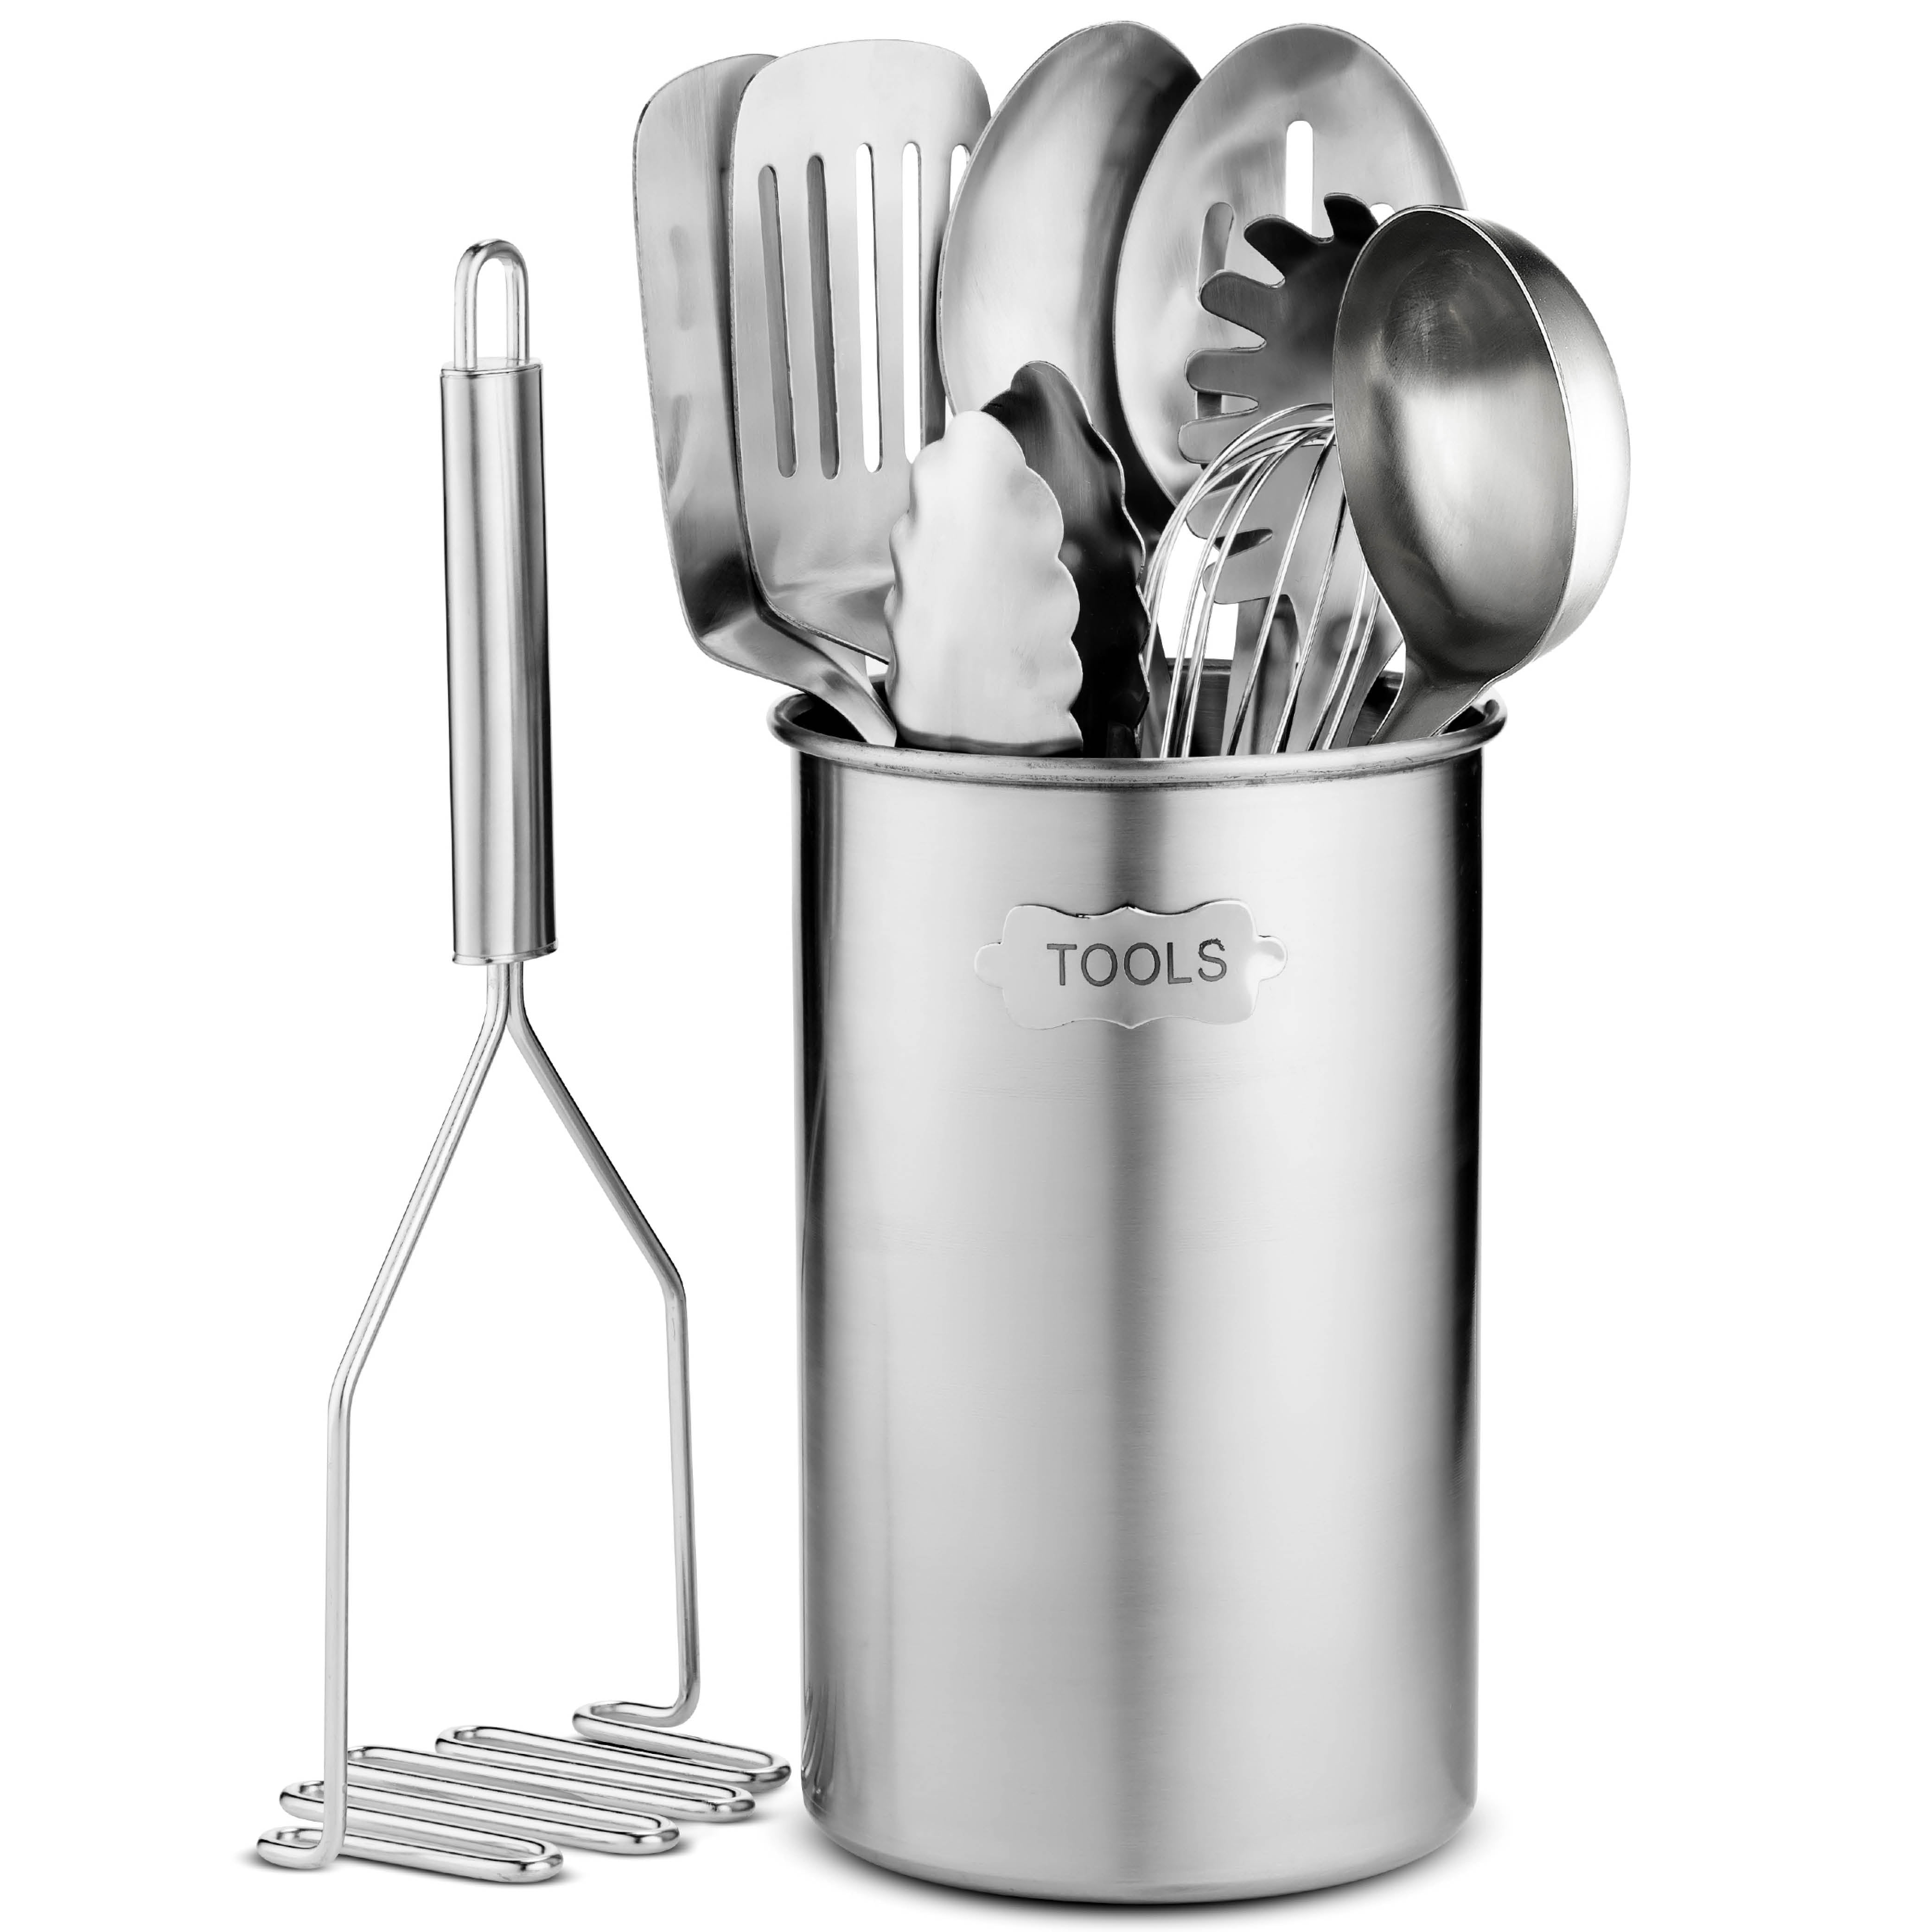 Essential Kitchen Utensils - Stainless Steel Whisk –